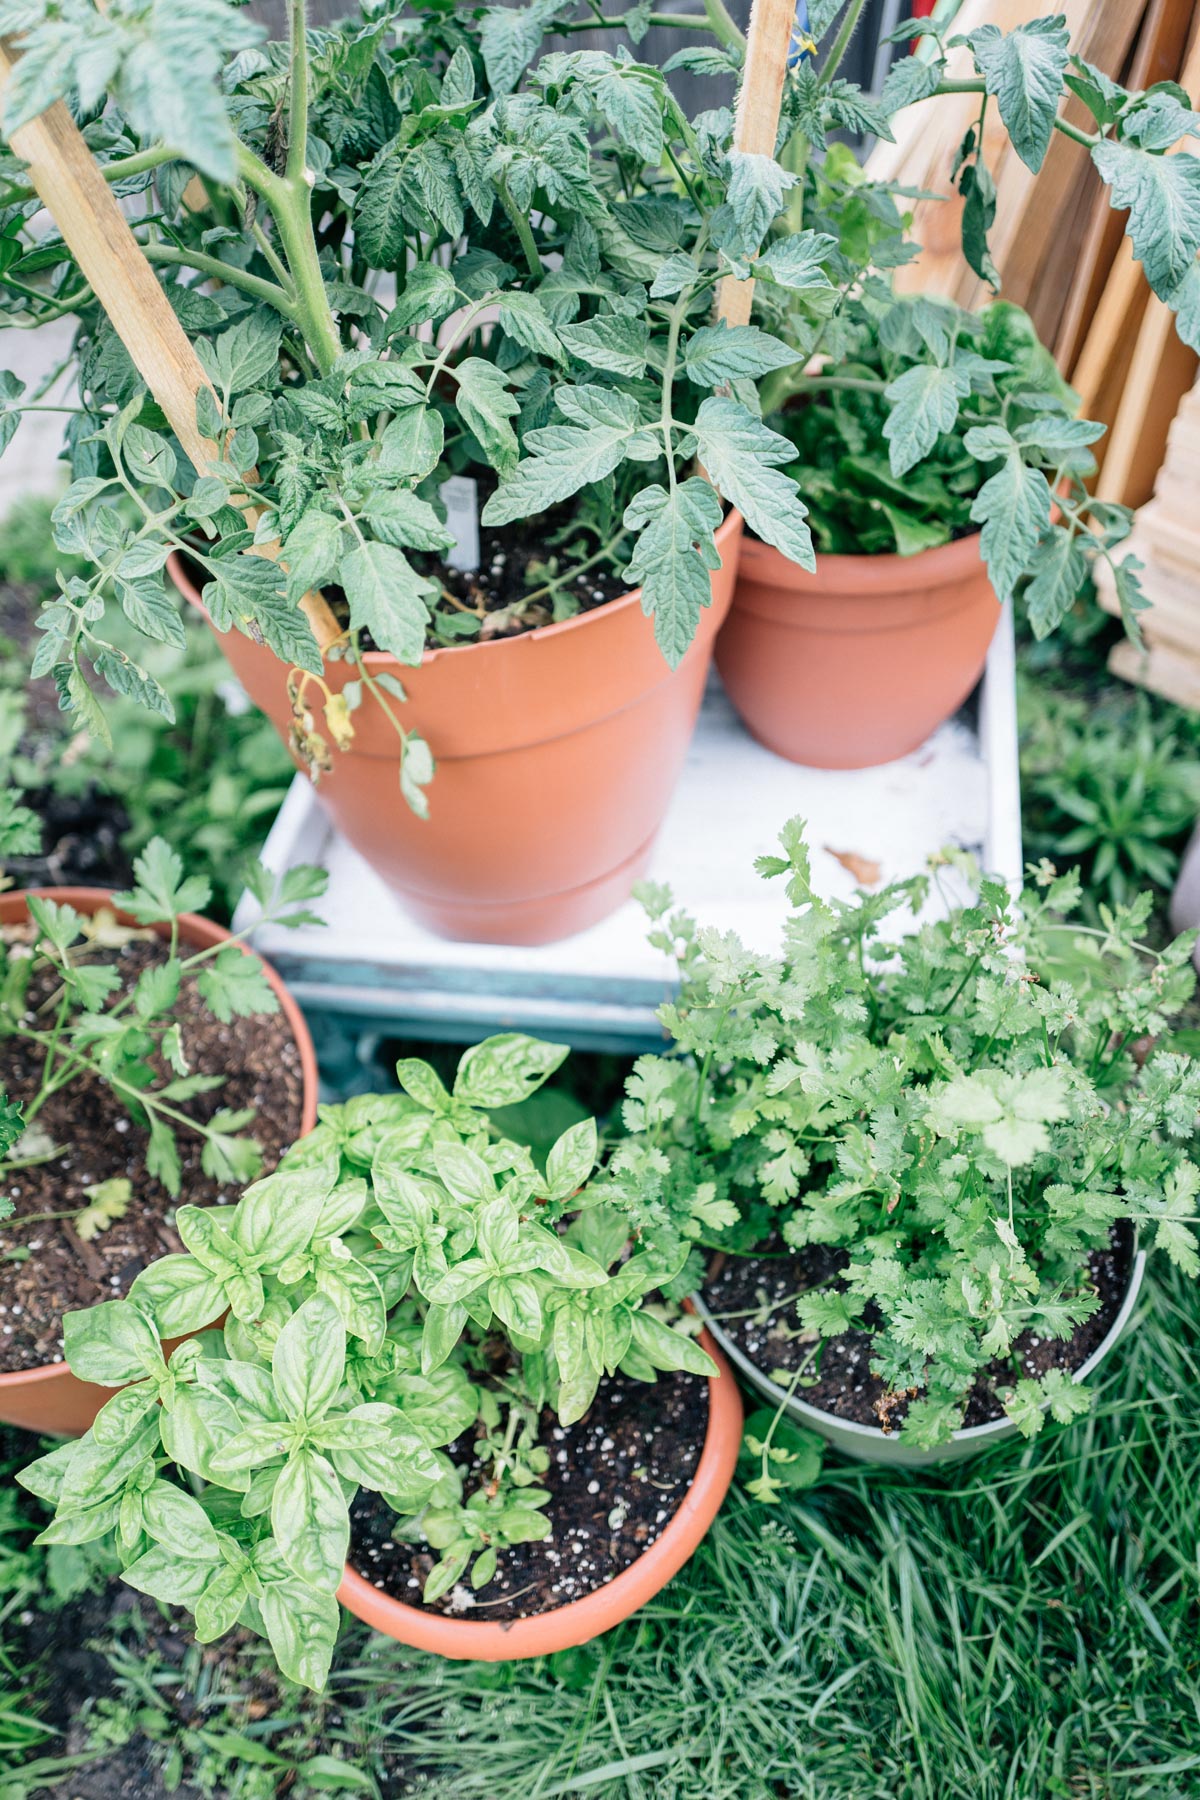 How To Start An Herb Garden For Beginners